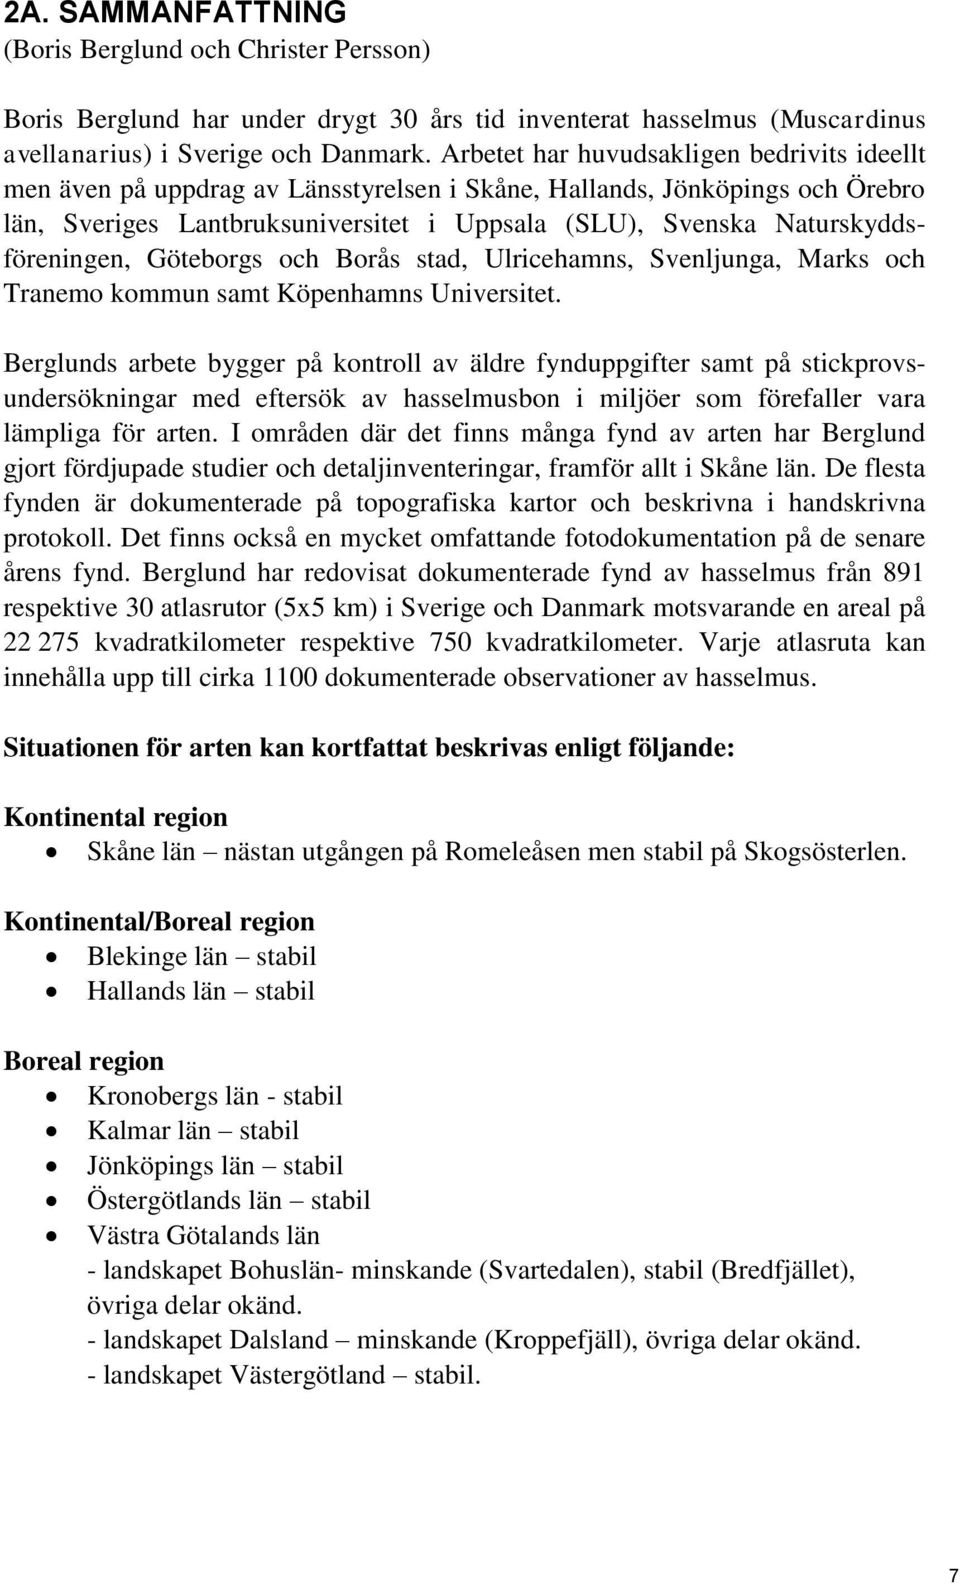 Naturskyddsföreningen, Göteborgs och Borås stad, Ulricehamns, Svenljunga, Marks och Tranemo kommun samt Köpenhamns Universitet.